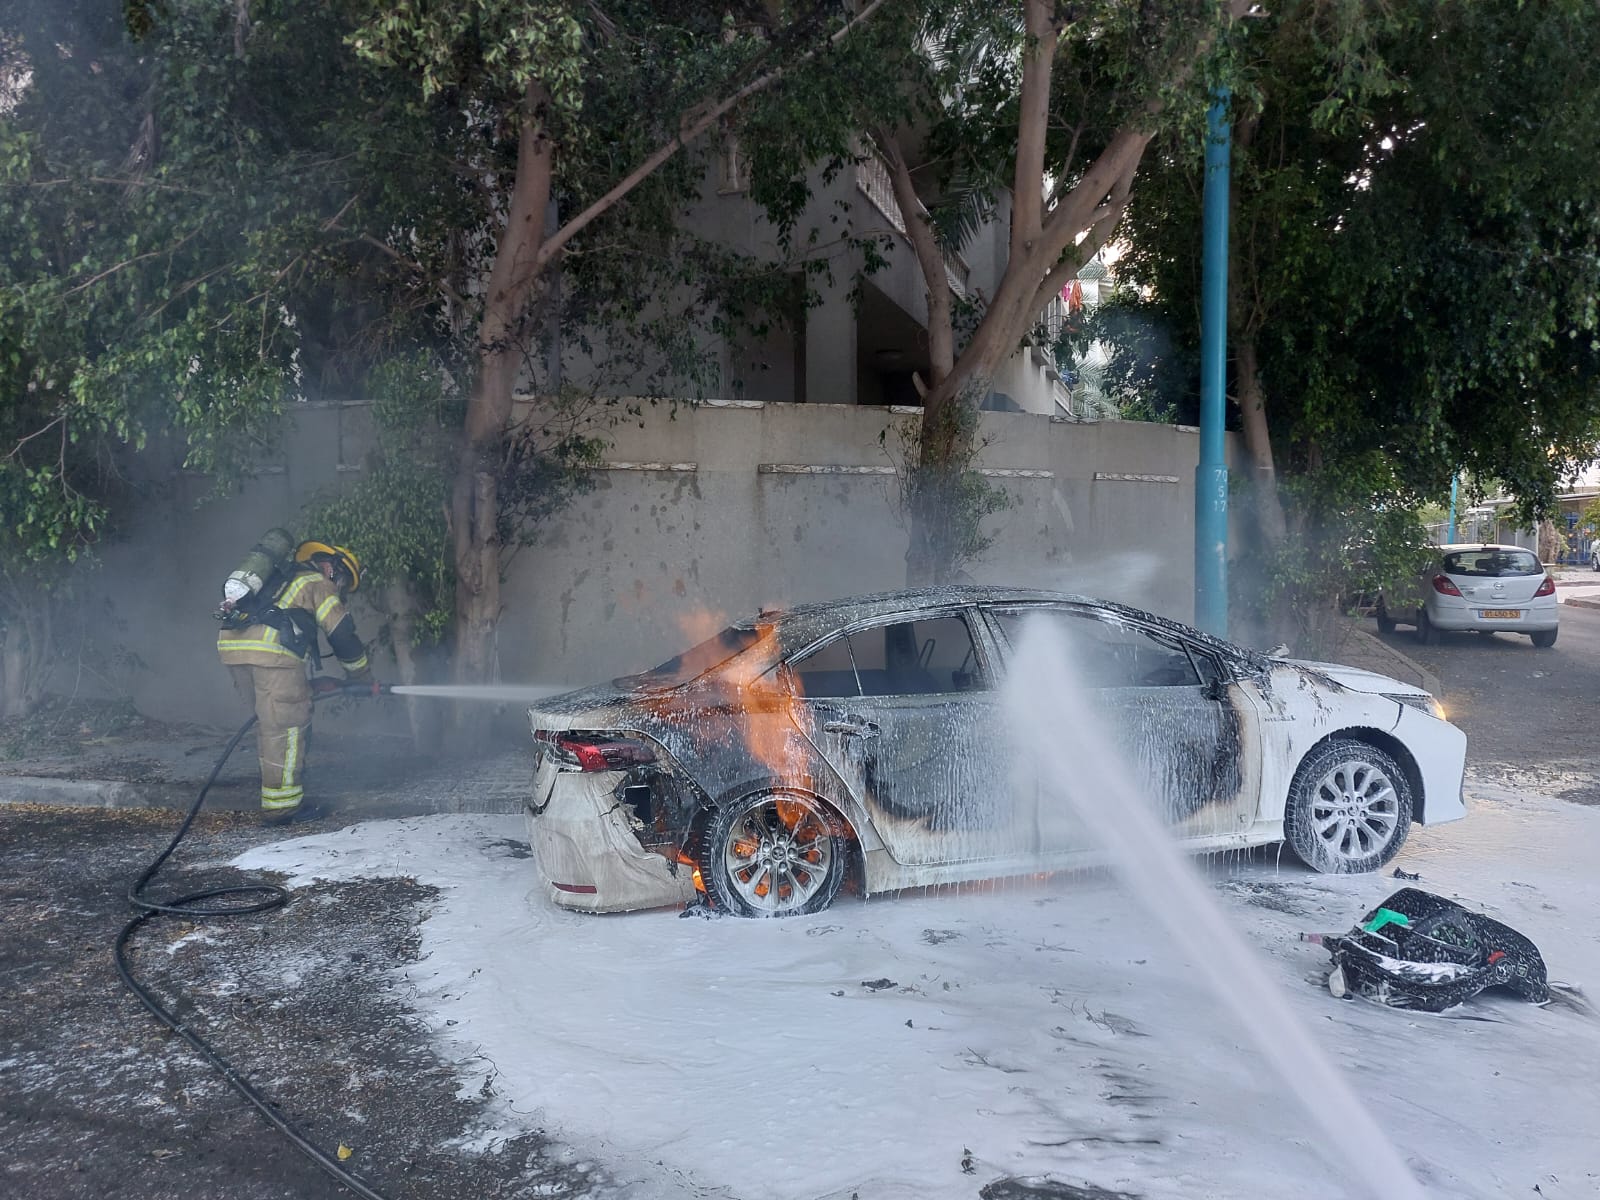  اللد: حريق في سيارة دون وقوع اصابات